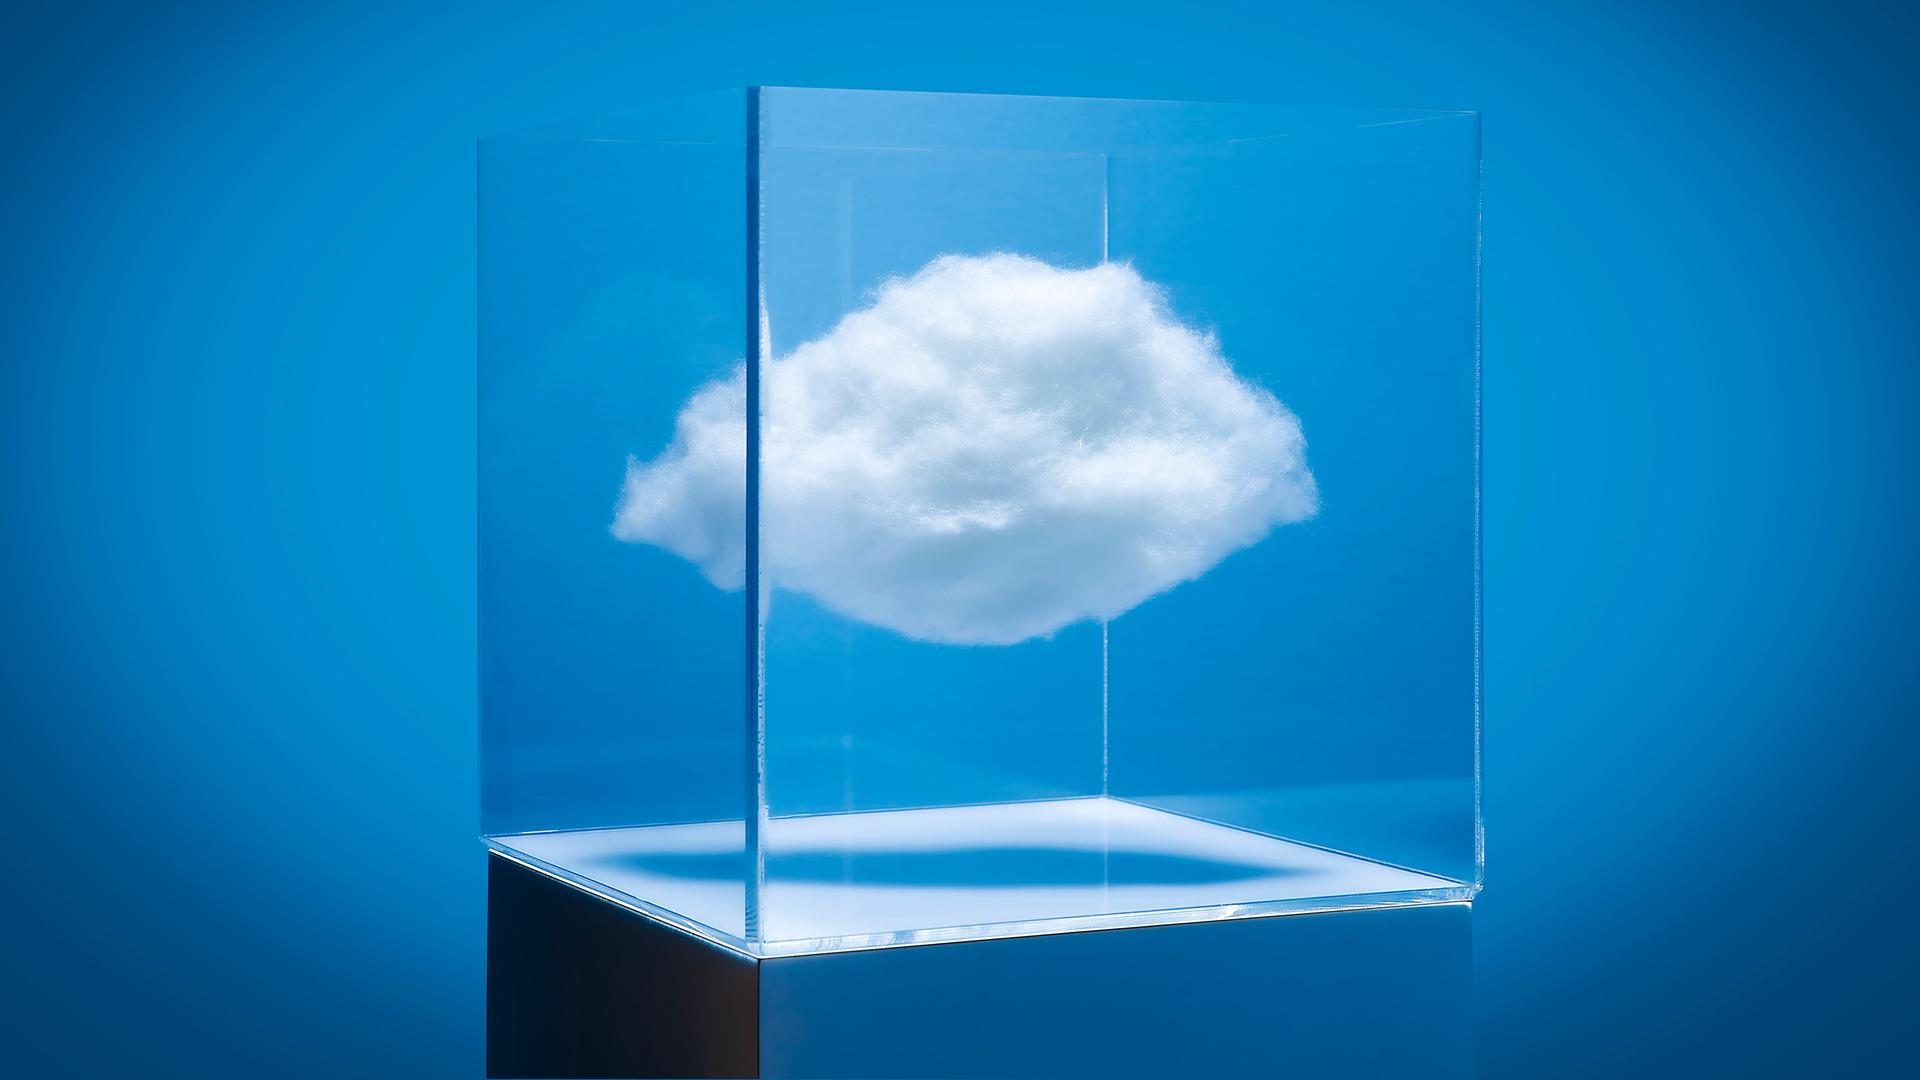 Visualisierung einer weißen Wolke, die in einem Glaskubus schwebt. Der Kubus steht vor einem blauen Hintergrund